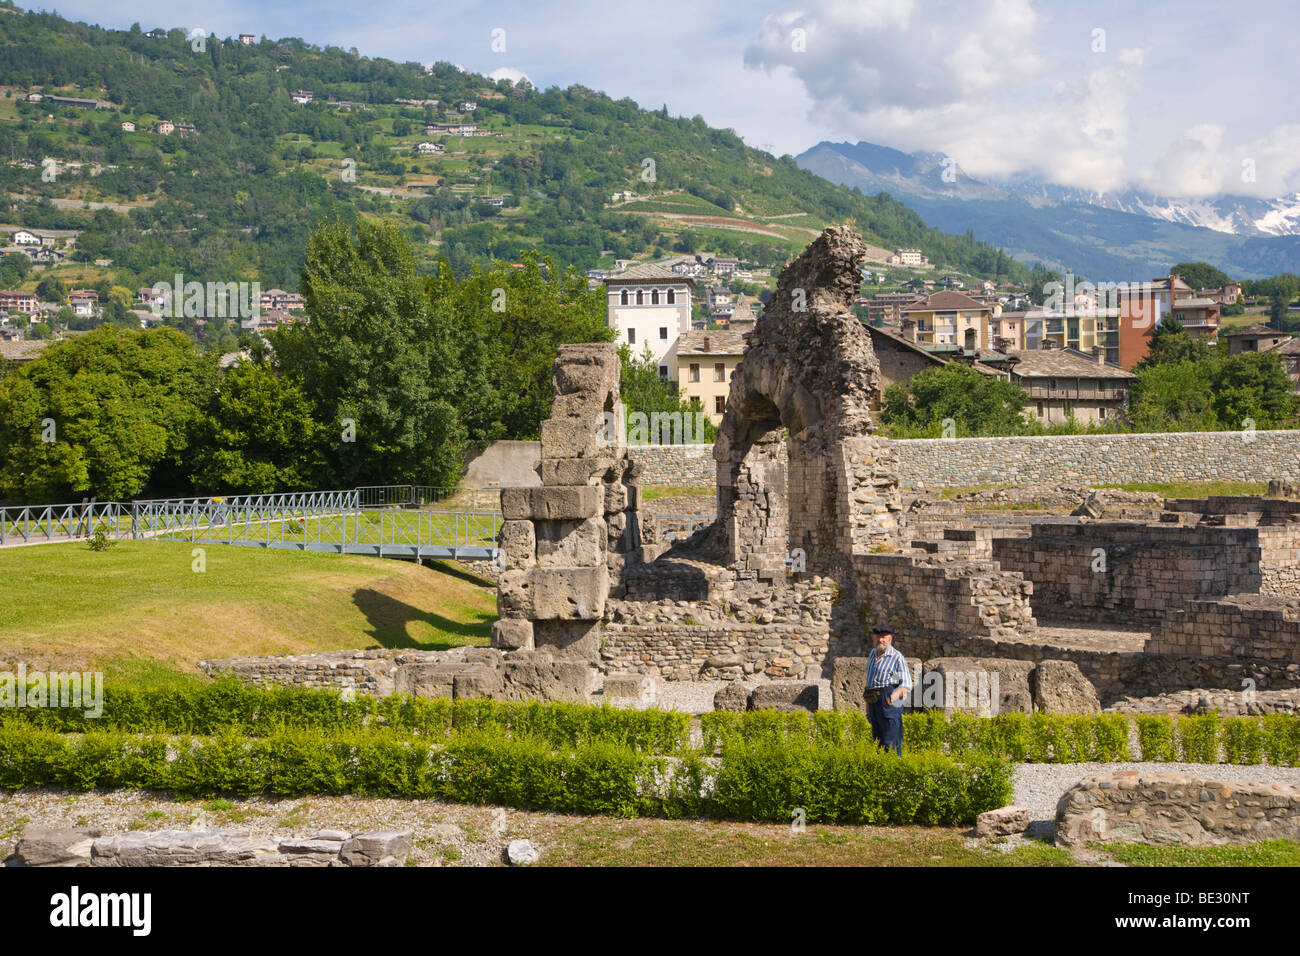 Roman theater, Teatro Romano, Anfiteatro Romano, Aosta, Aosta Valley, Valle d'Aosta, Italy, Europe Stock Photo